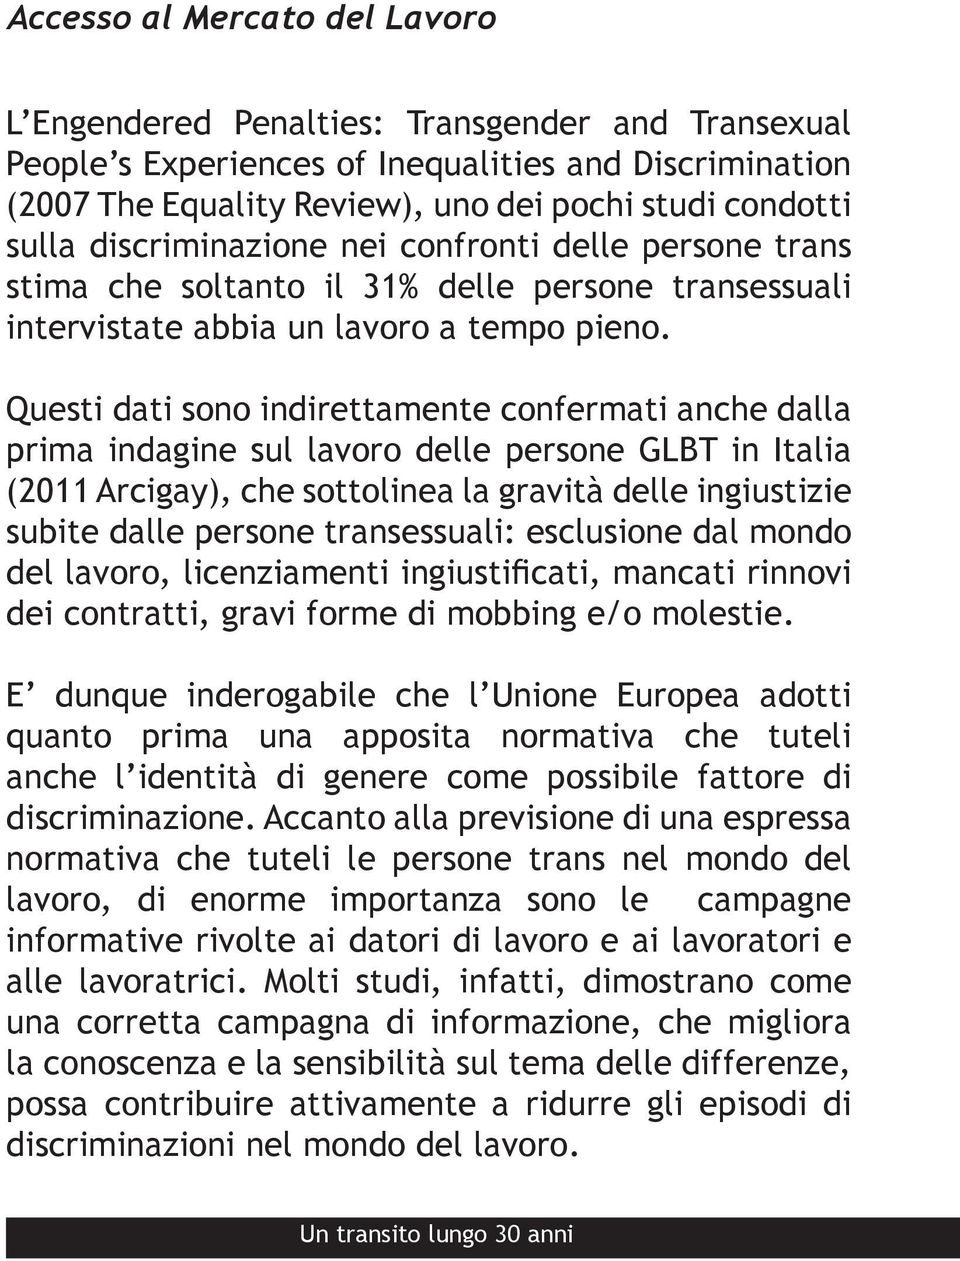 Questi dati sono indirettamente confermati anche dalla prima indagine sul lavoro delle persone GLBT in Italia (2011 Arcigay), che sottolinea la gravità delle ingiustizie subite dalle persone